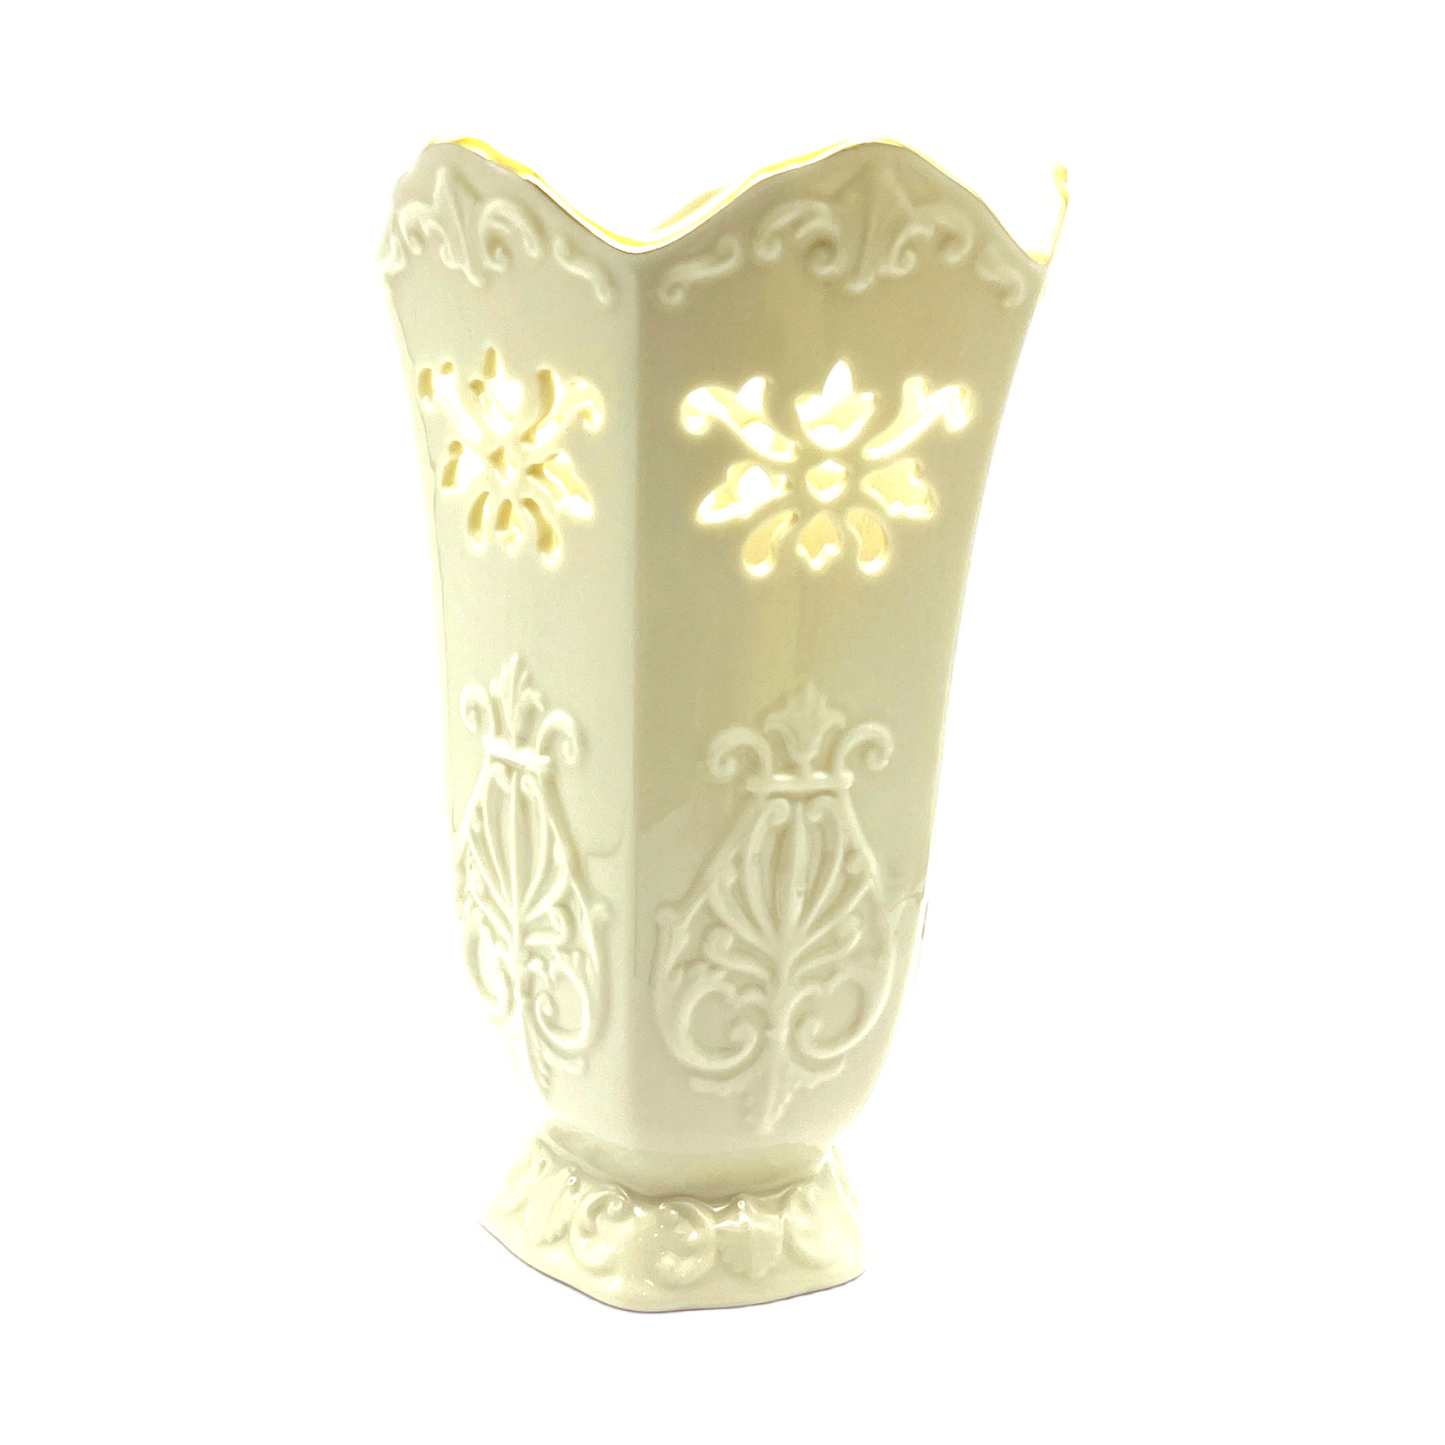 Lenox - Vase - Langtry Collection - 24K Gold Trim - Vintage - 7"